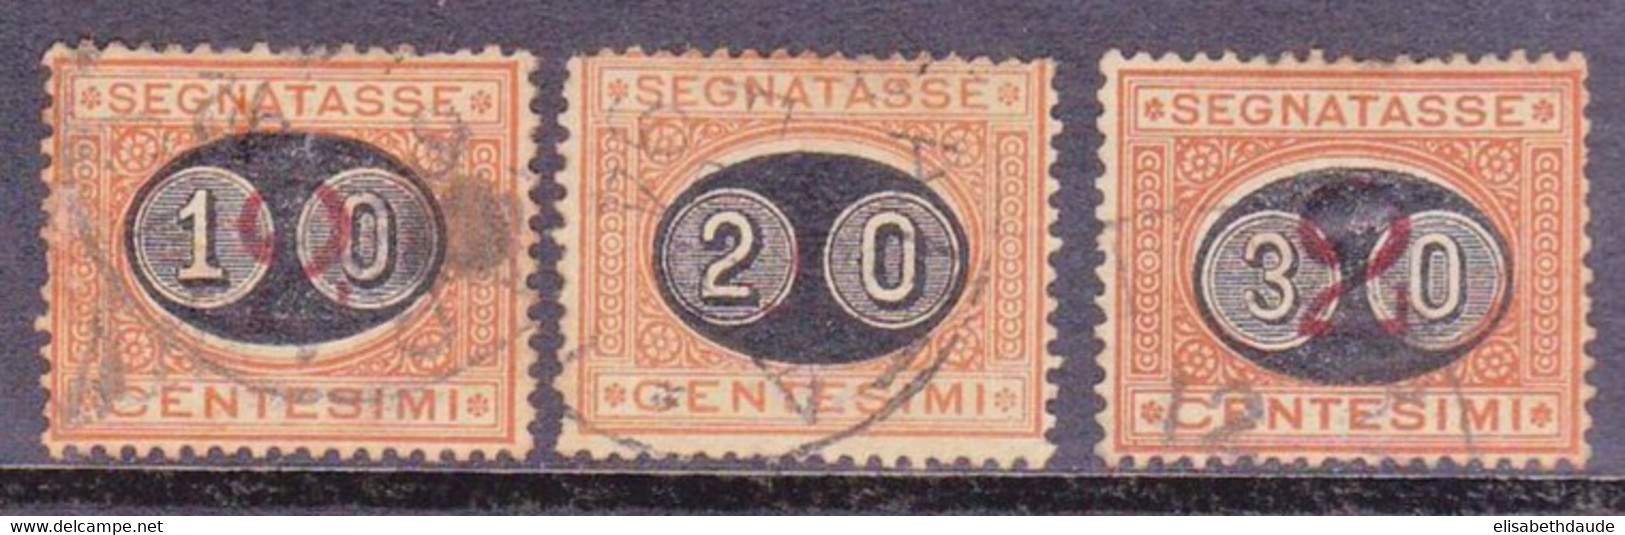 ITALIE - 1890 - YVERT N°22/24 OBLITERES - TAXE - COTE = 57 EUROS - Afgestempeld